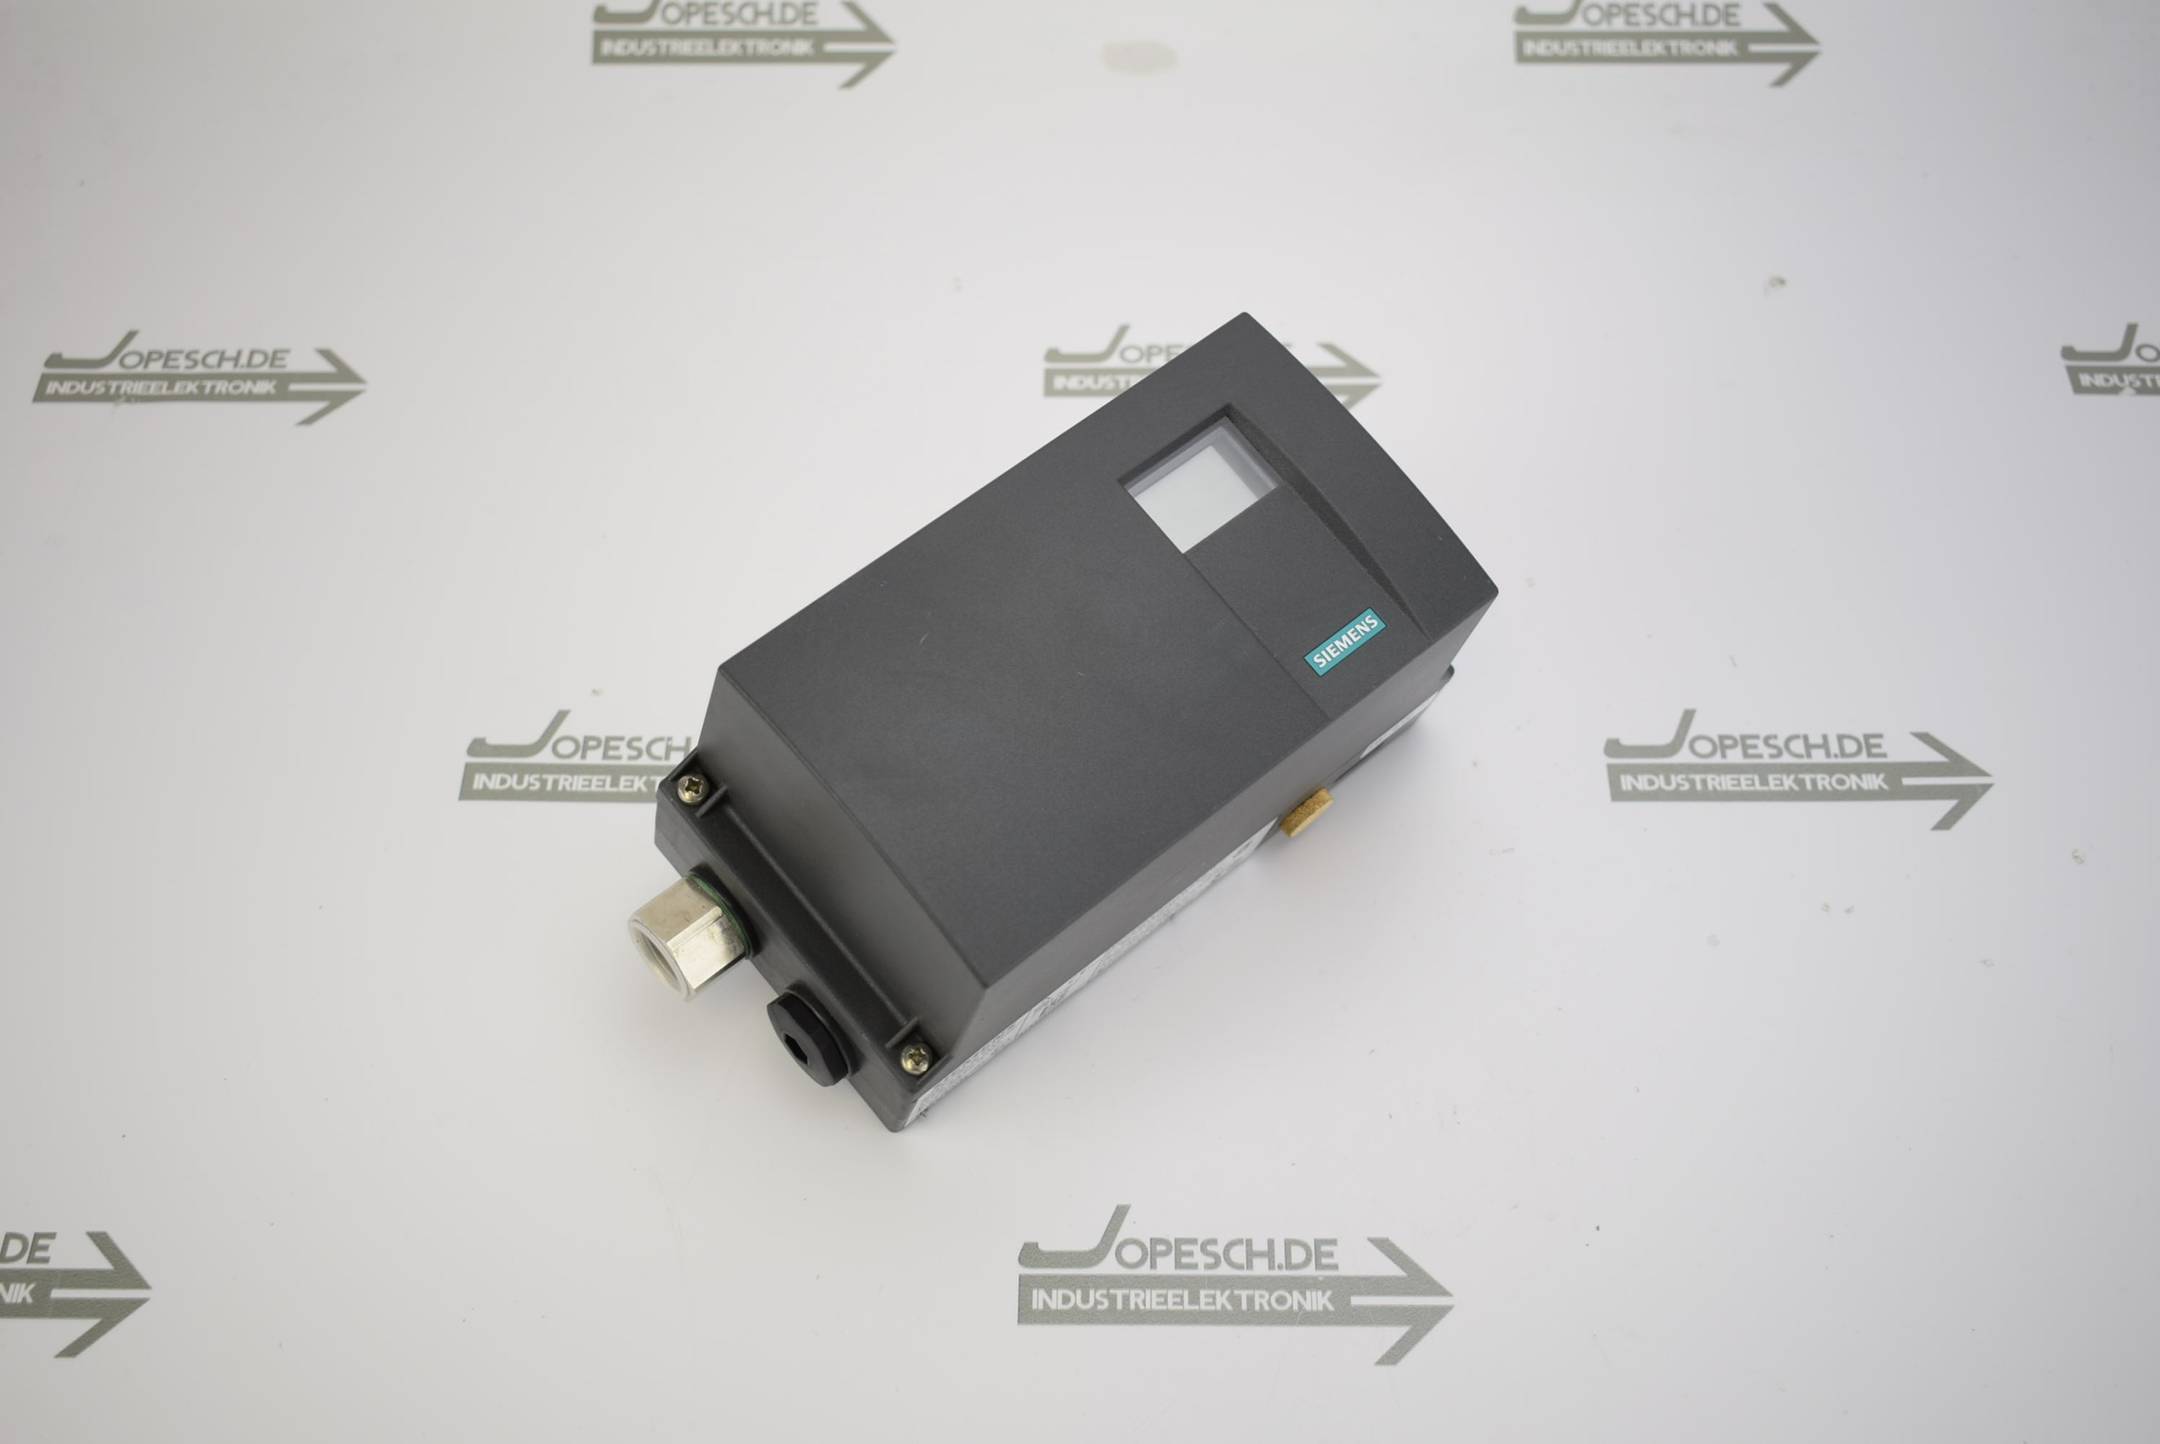 Siemens sipart PS2 i/p Positioner 6DR5010-0EN00-0AA0 ( 6DR5 010-0EN00-0AA0 )